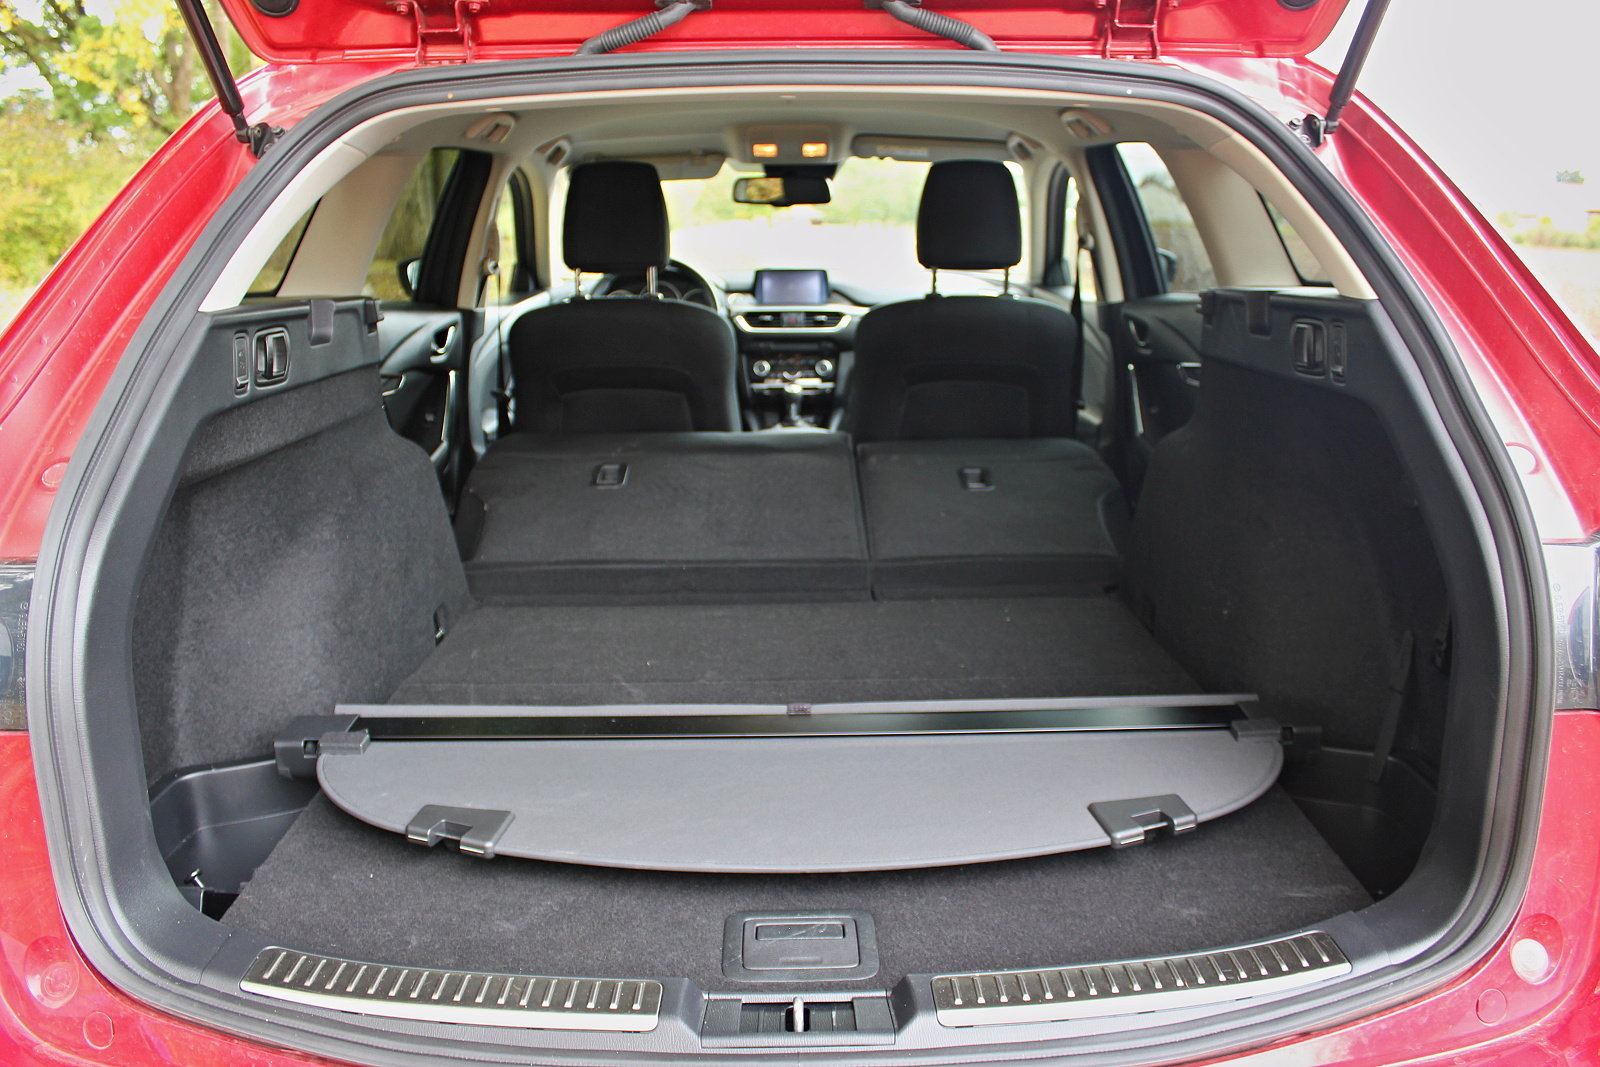 Mazda 6 Wagon 2.0 Skyactiv-G ve verzi Attraction